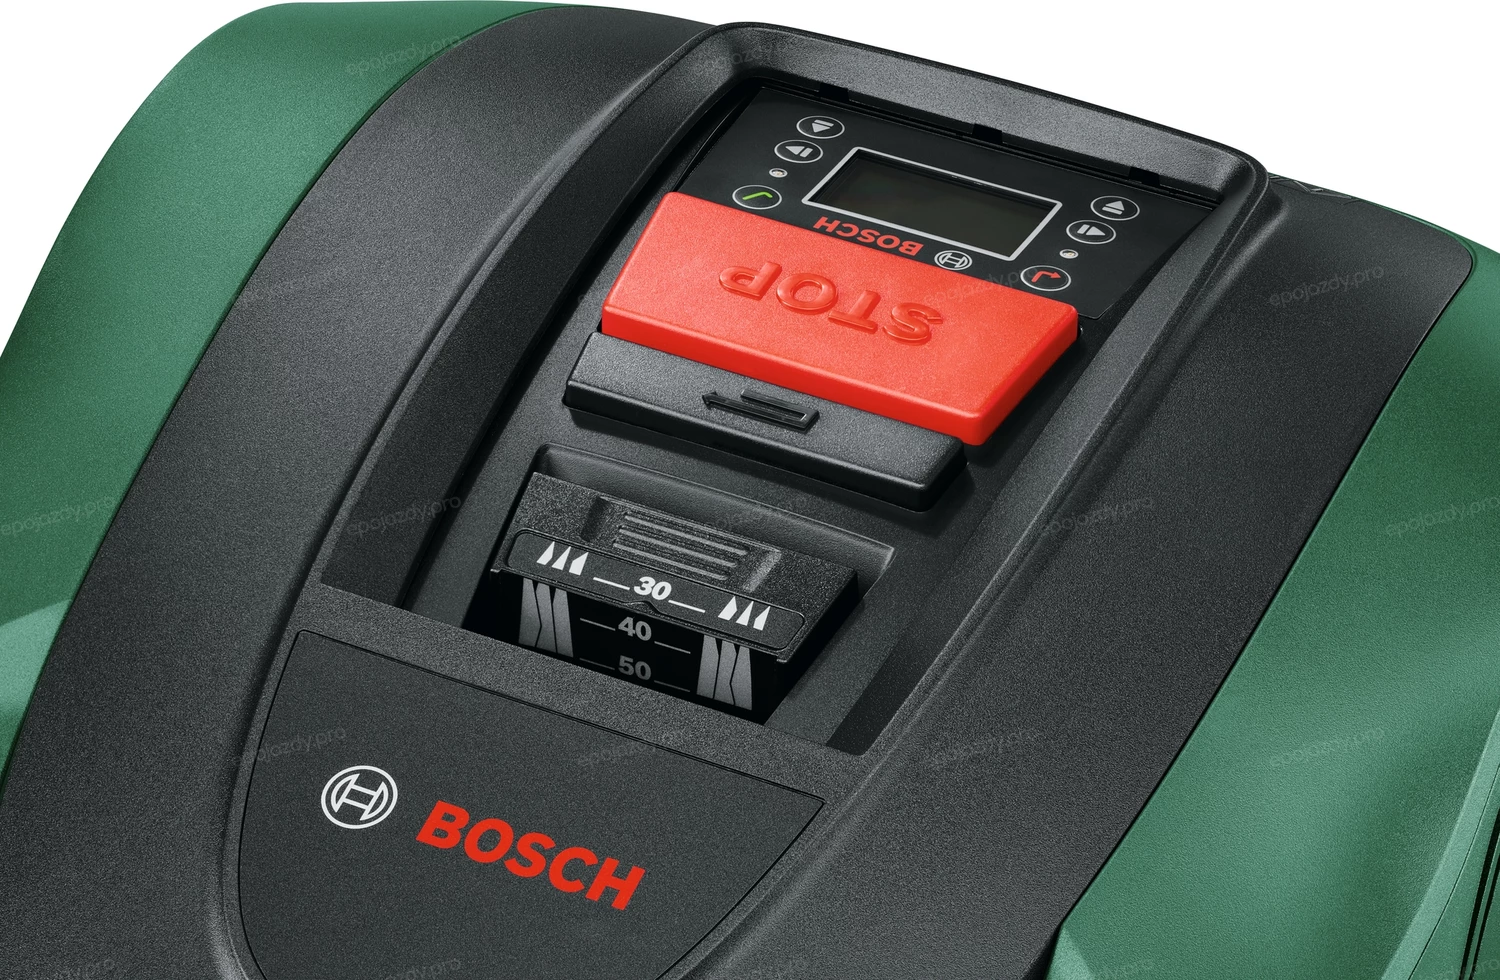 Robot koszący Bosch Indego M 700 jest bardzo prosty w obsłudze